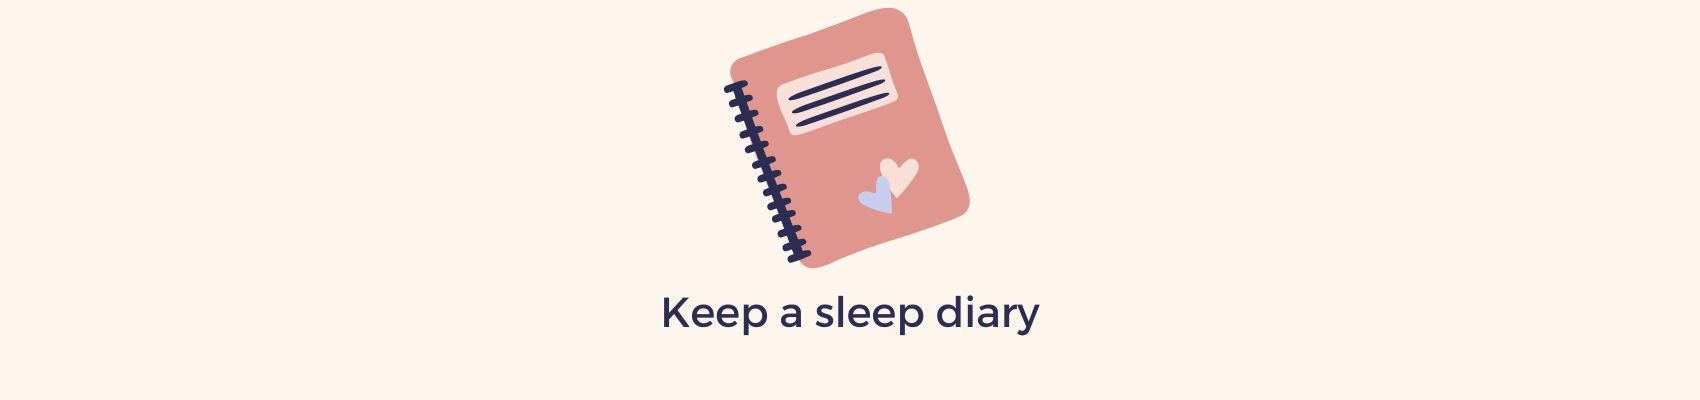 Sleep diary